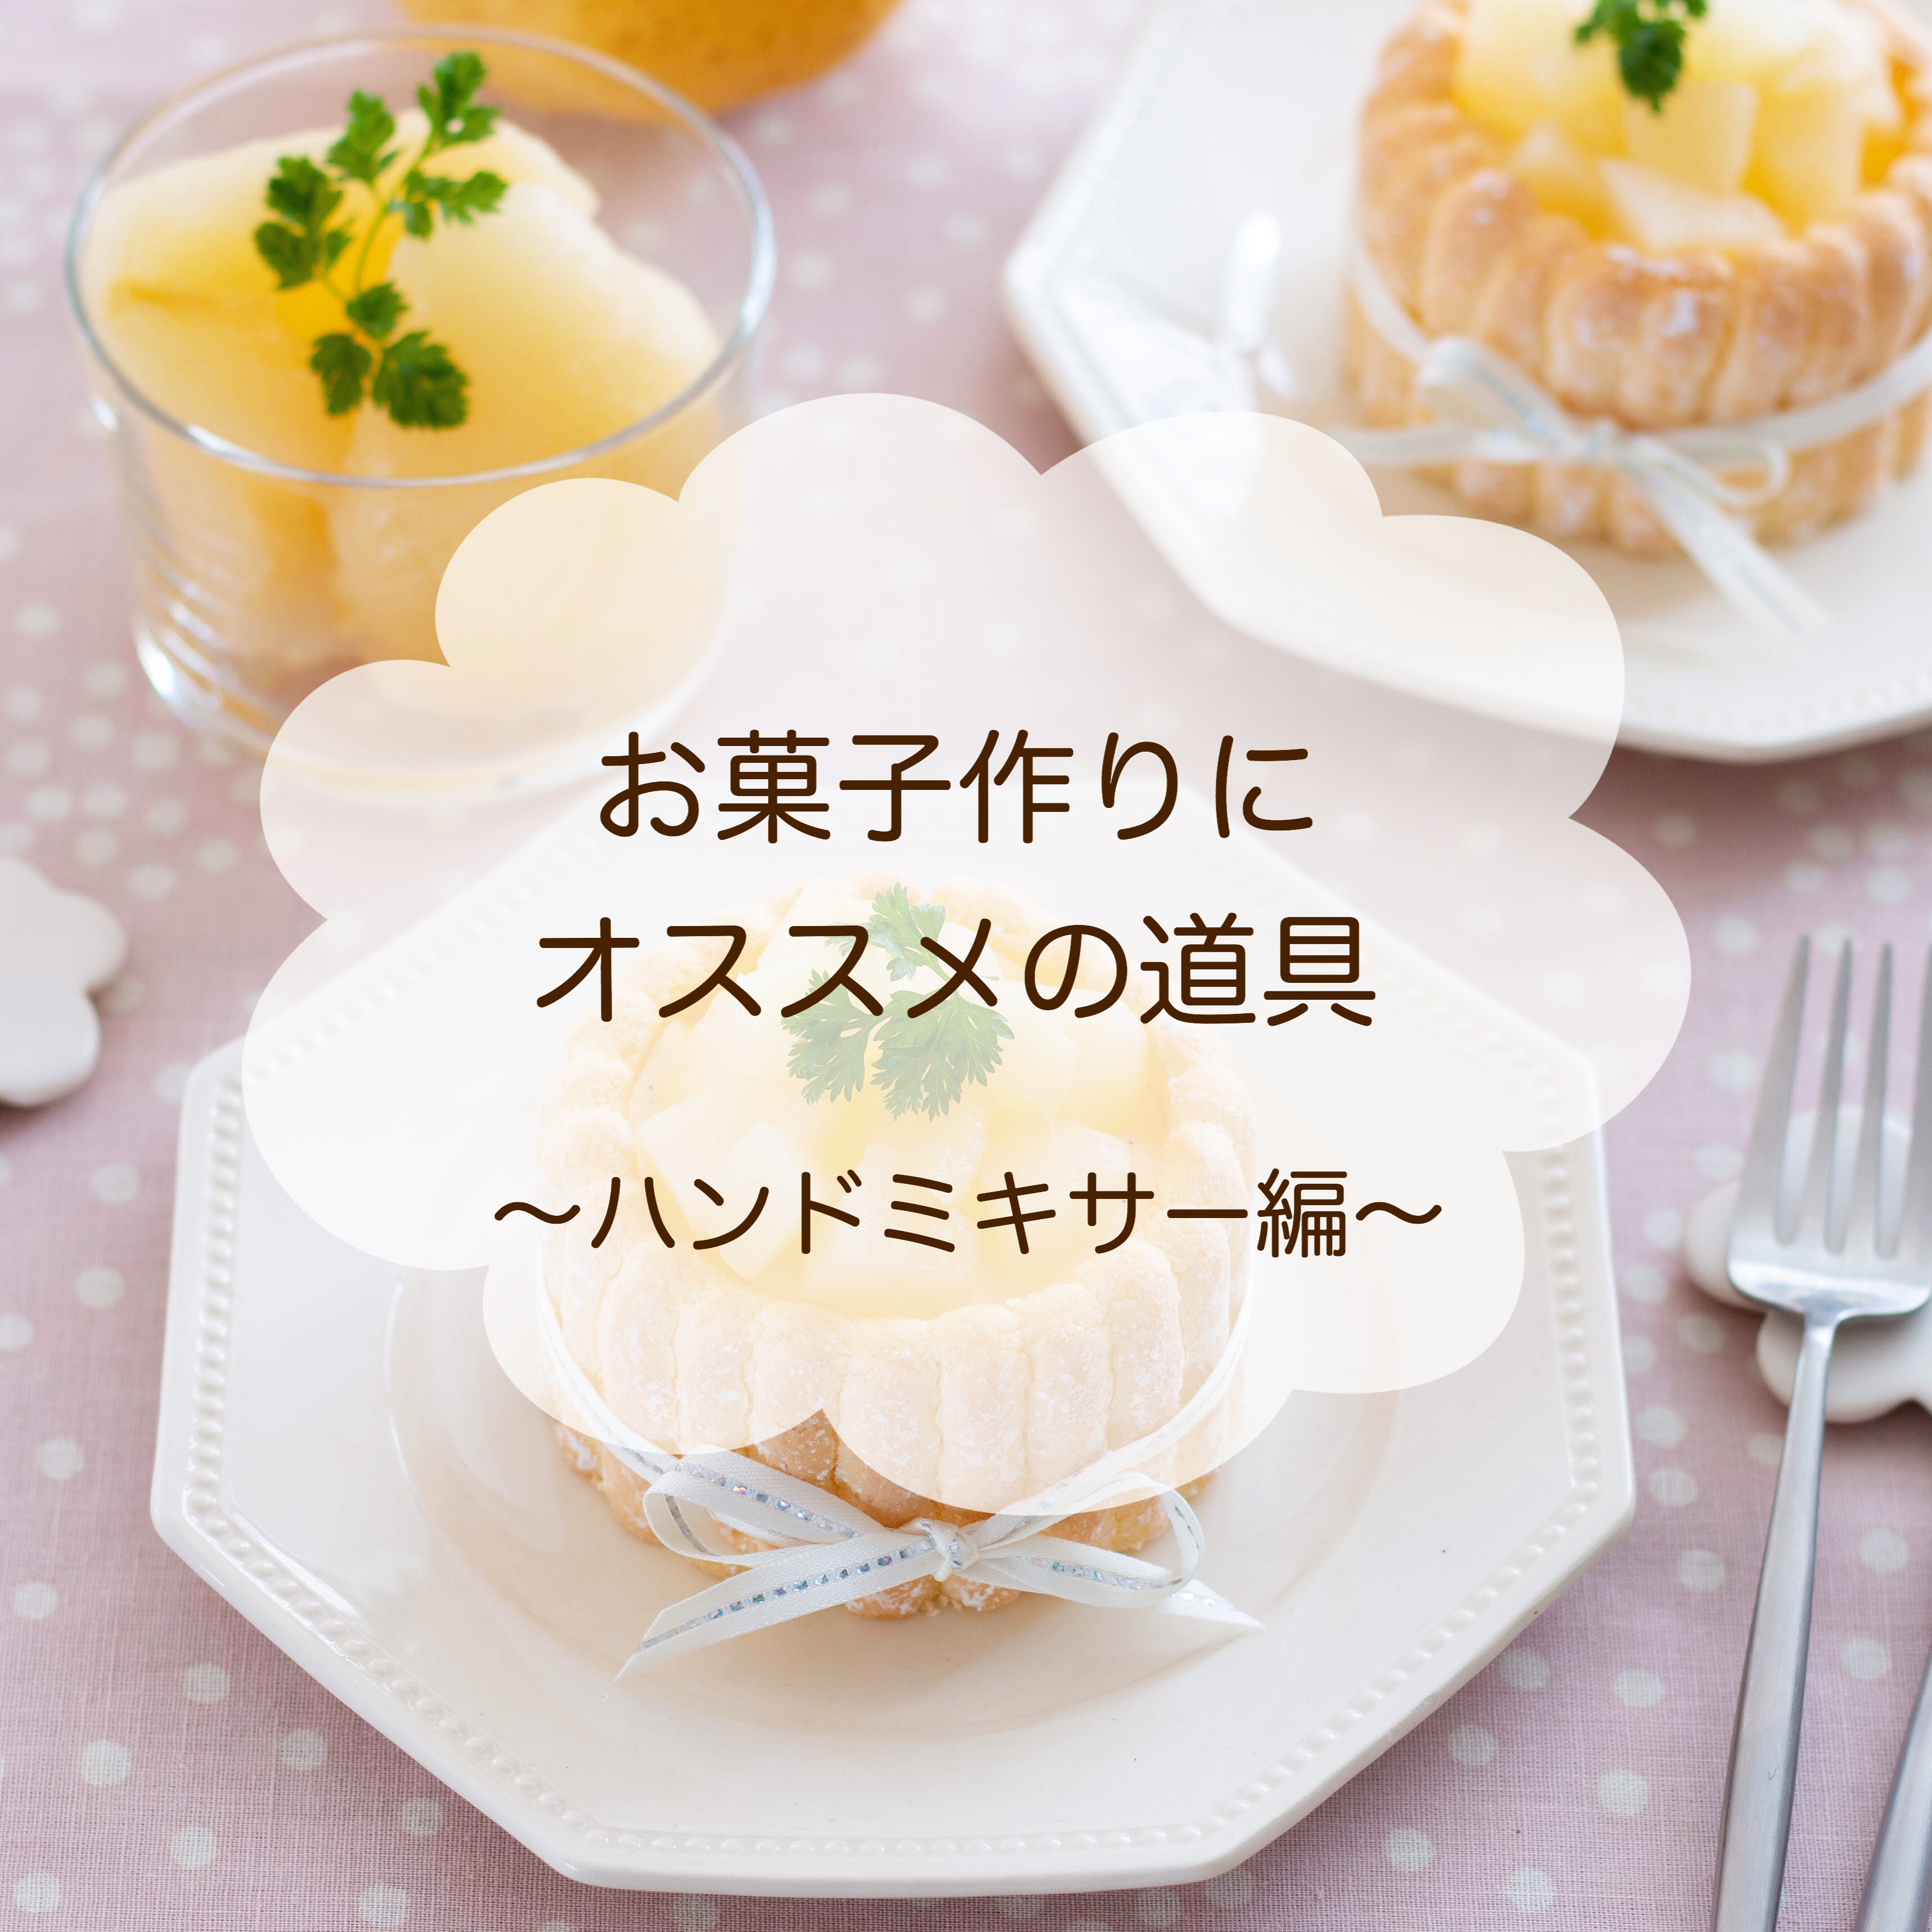 お菓子作りのコツ おすすめのハンドミキサー Marimo Cafe 可愛くて美味しいお菓子レシピ Powered By ライブドアブログ